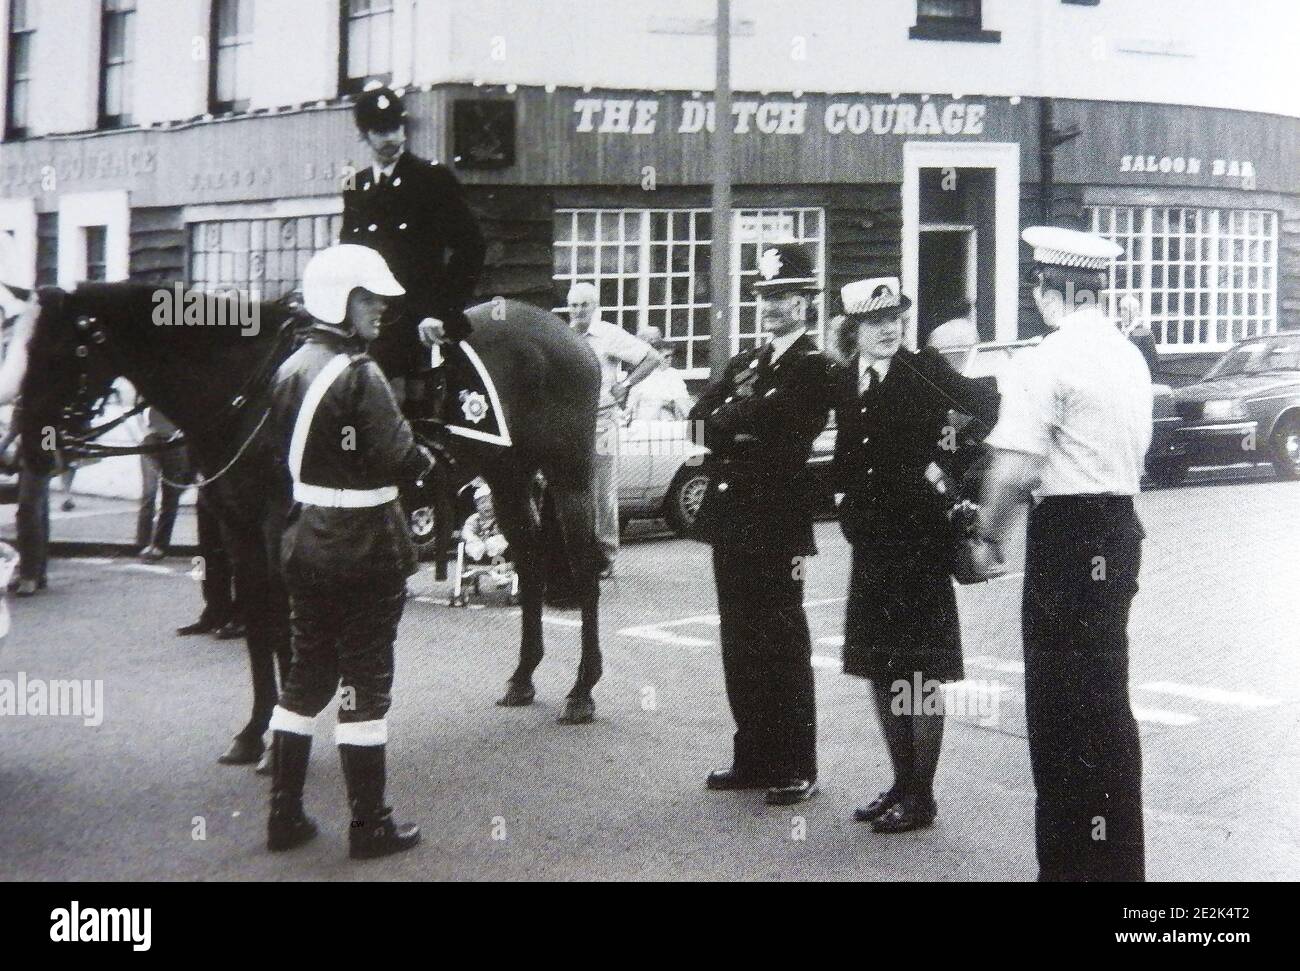 Un rassemblement de la police britannique vers la fin des années 1960 à Whitby, la régate annuelle du North Yorkshire, en Angleterre, montrant les divers uniformes et coiffures portés par les différentes branches du service à cette époque. -- policier monté sur son cheval, flic moto, batte bobby (avec casque), femme officier de police et conducteur de voiture d'équipe (chemise blanche) derrière est l'ancien bar hollandais courage (maintenant défunte) qui faisait partie de l'Hôtel Royal sur la falaise ouest de Whitby. Banque D'Images